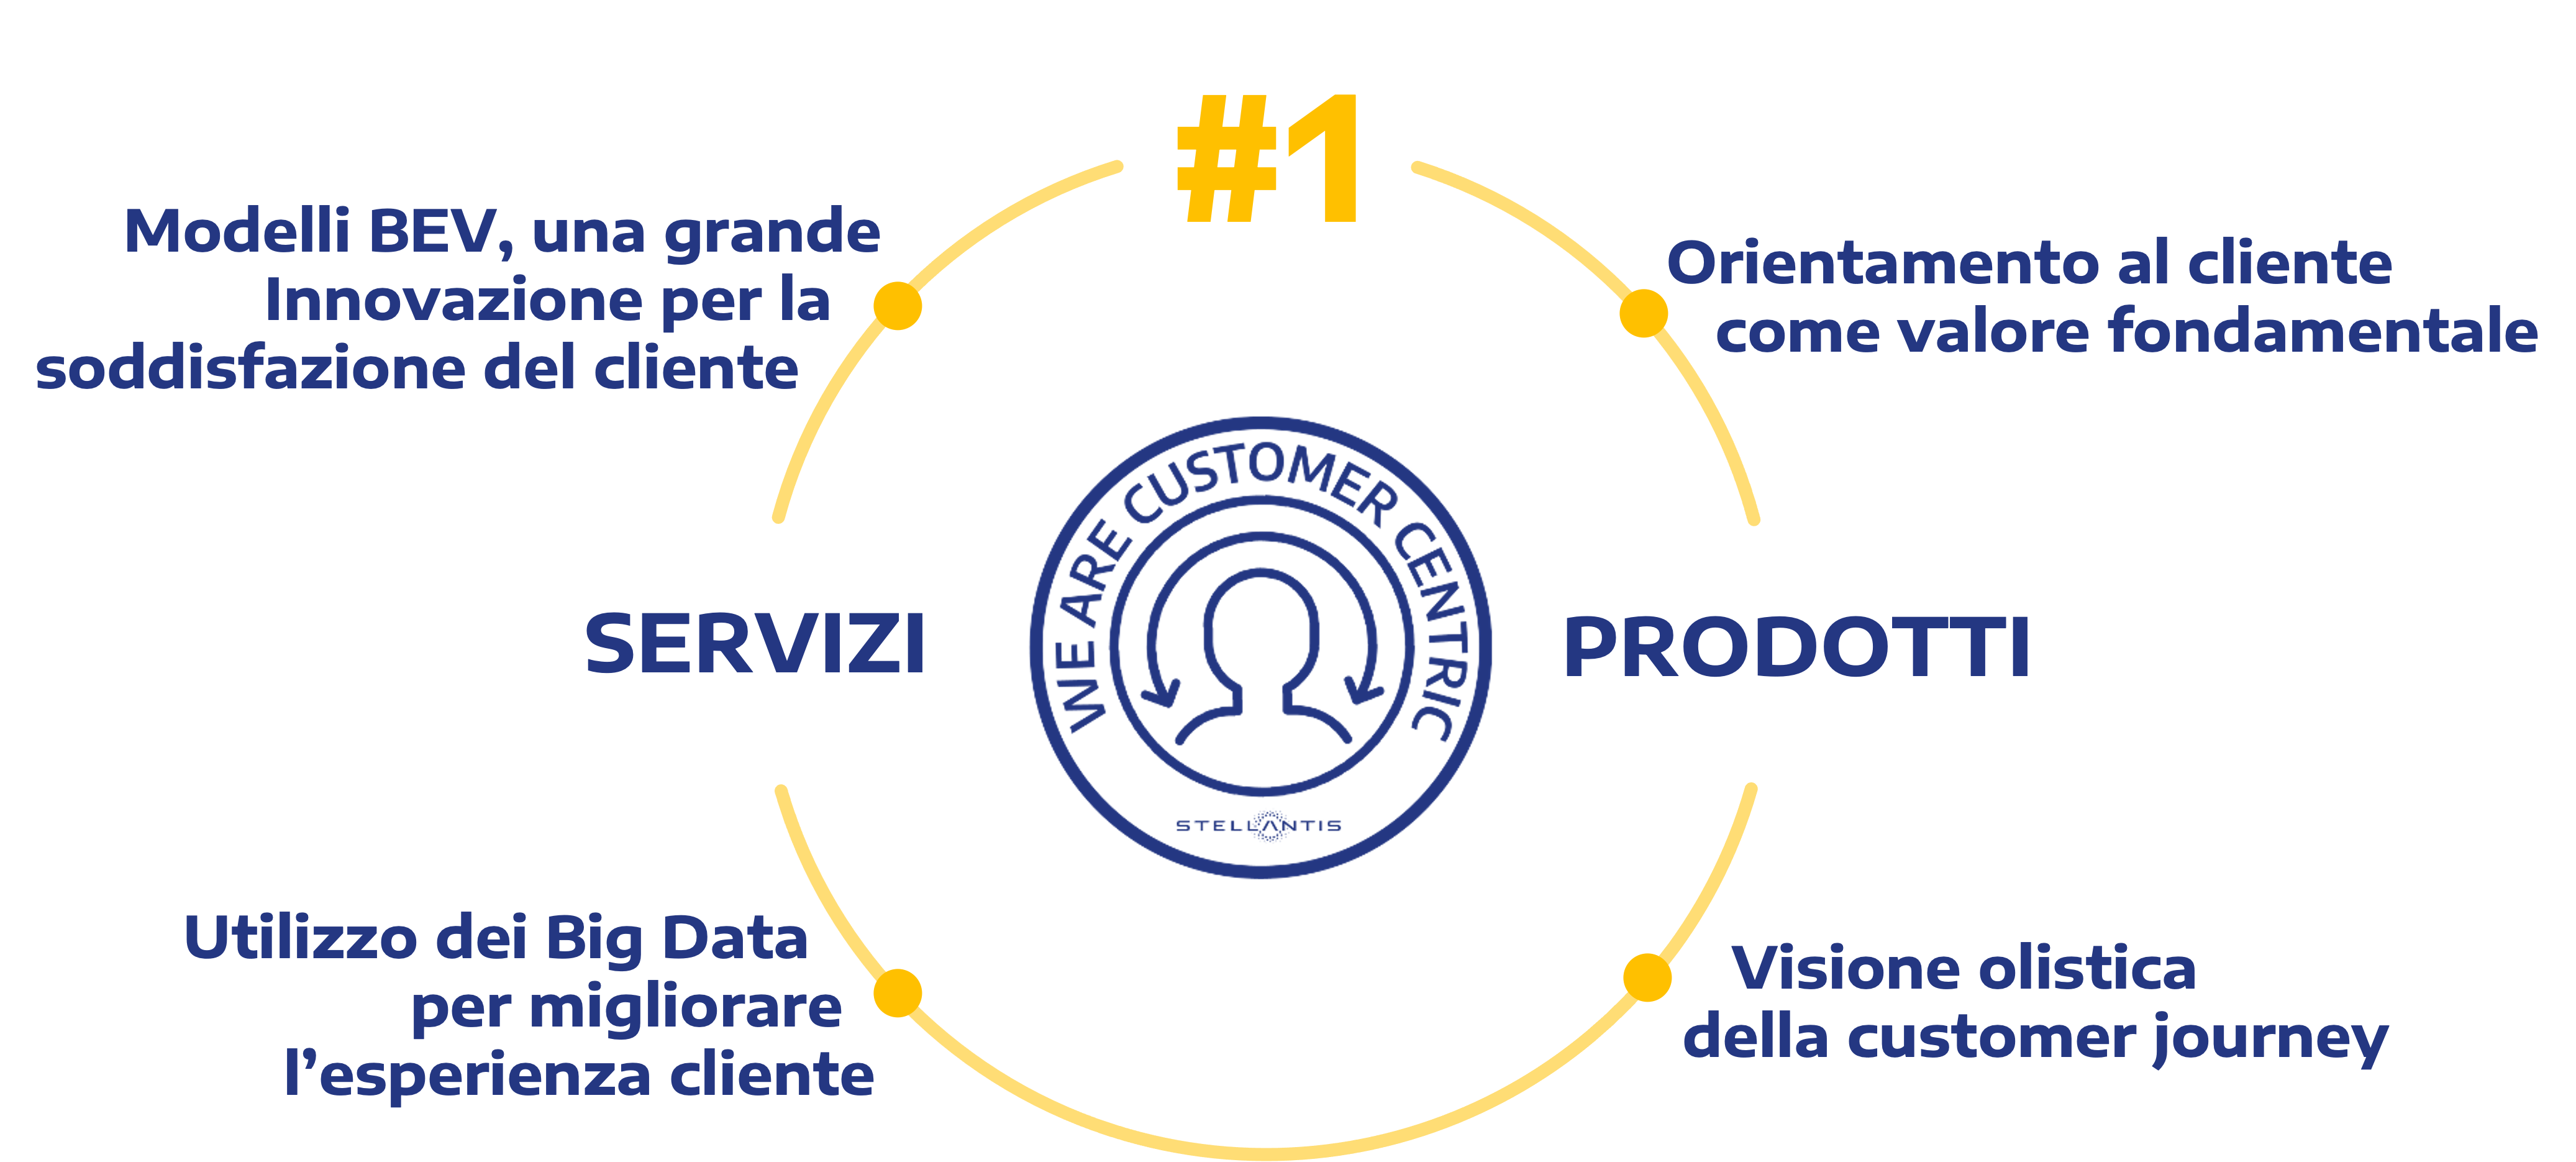 Grafico delle quattro aree chiave dell'ambizione di Stellantis di essere il numero uno nella soddisfazione del cliente